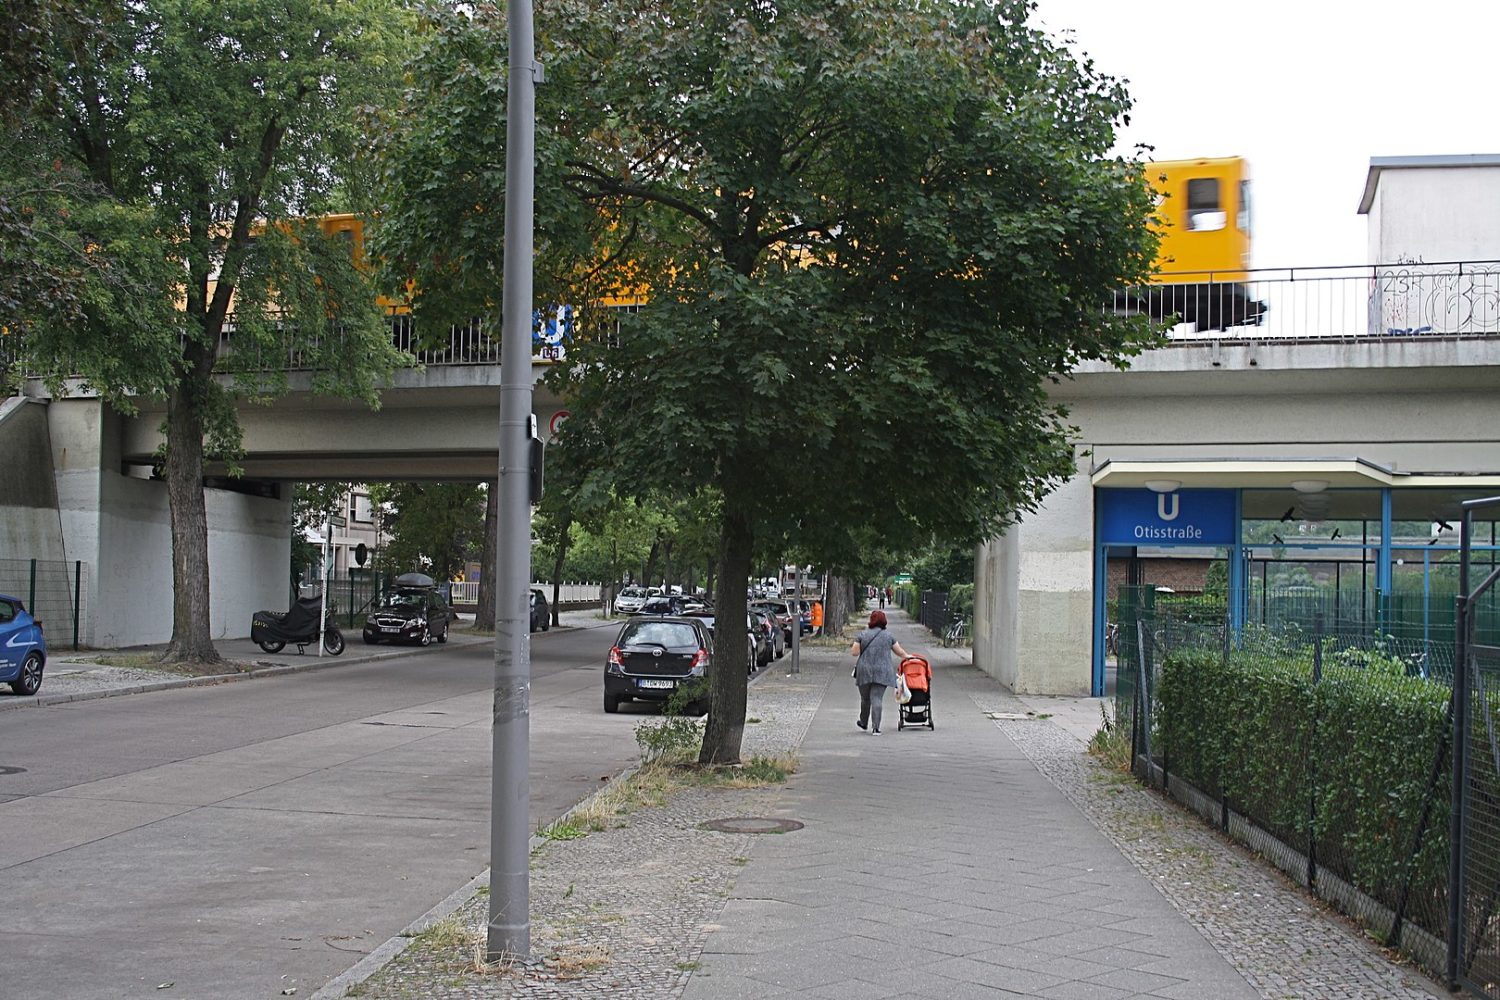 Nicht viel los rund um die Otisstraße. Foto: Roehrensee/Wikimedia Commons/CC BY-SA 4.0